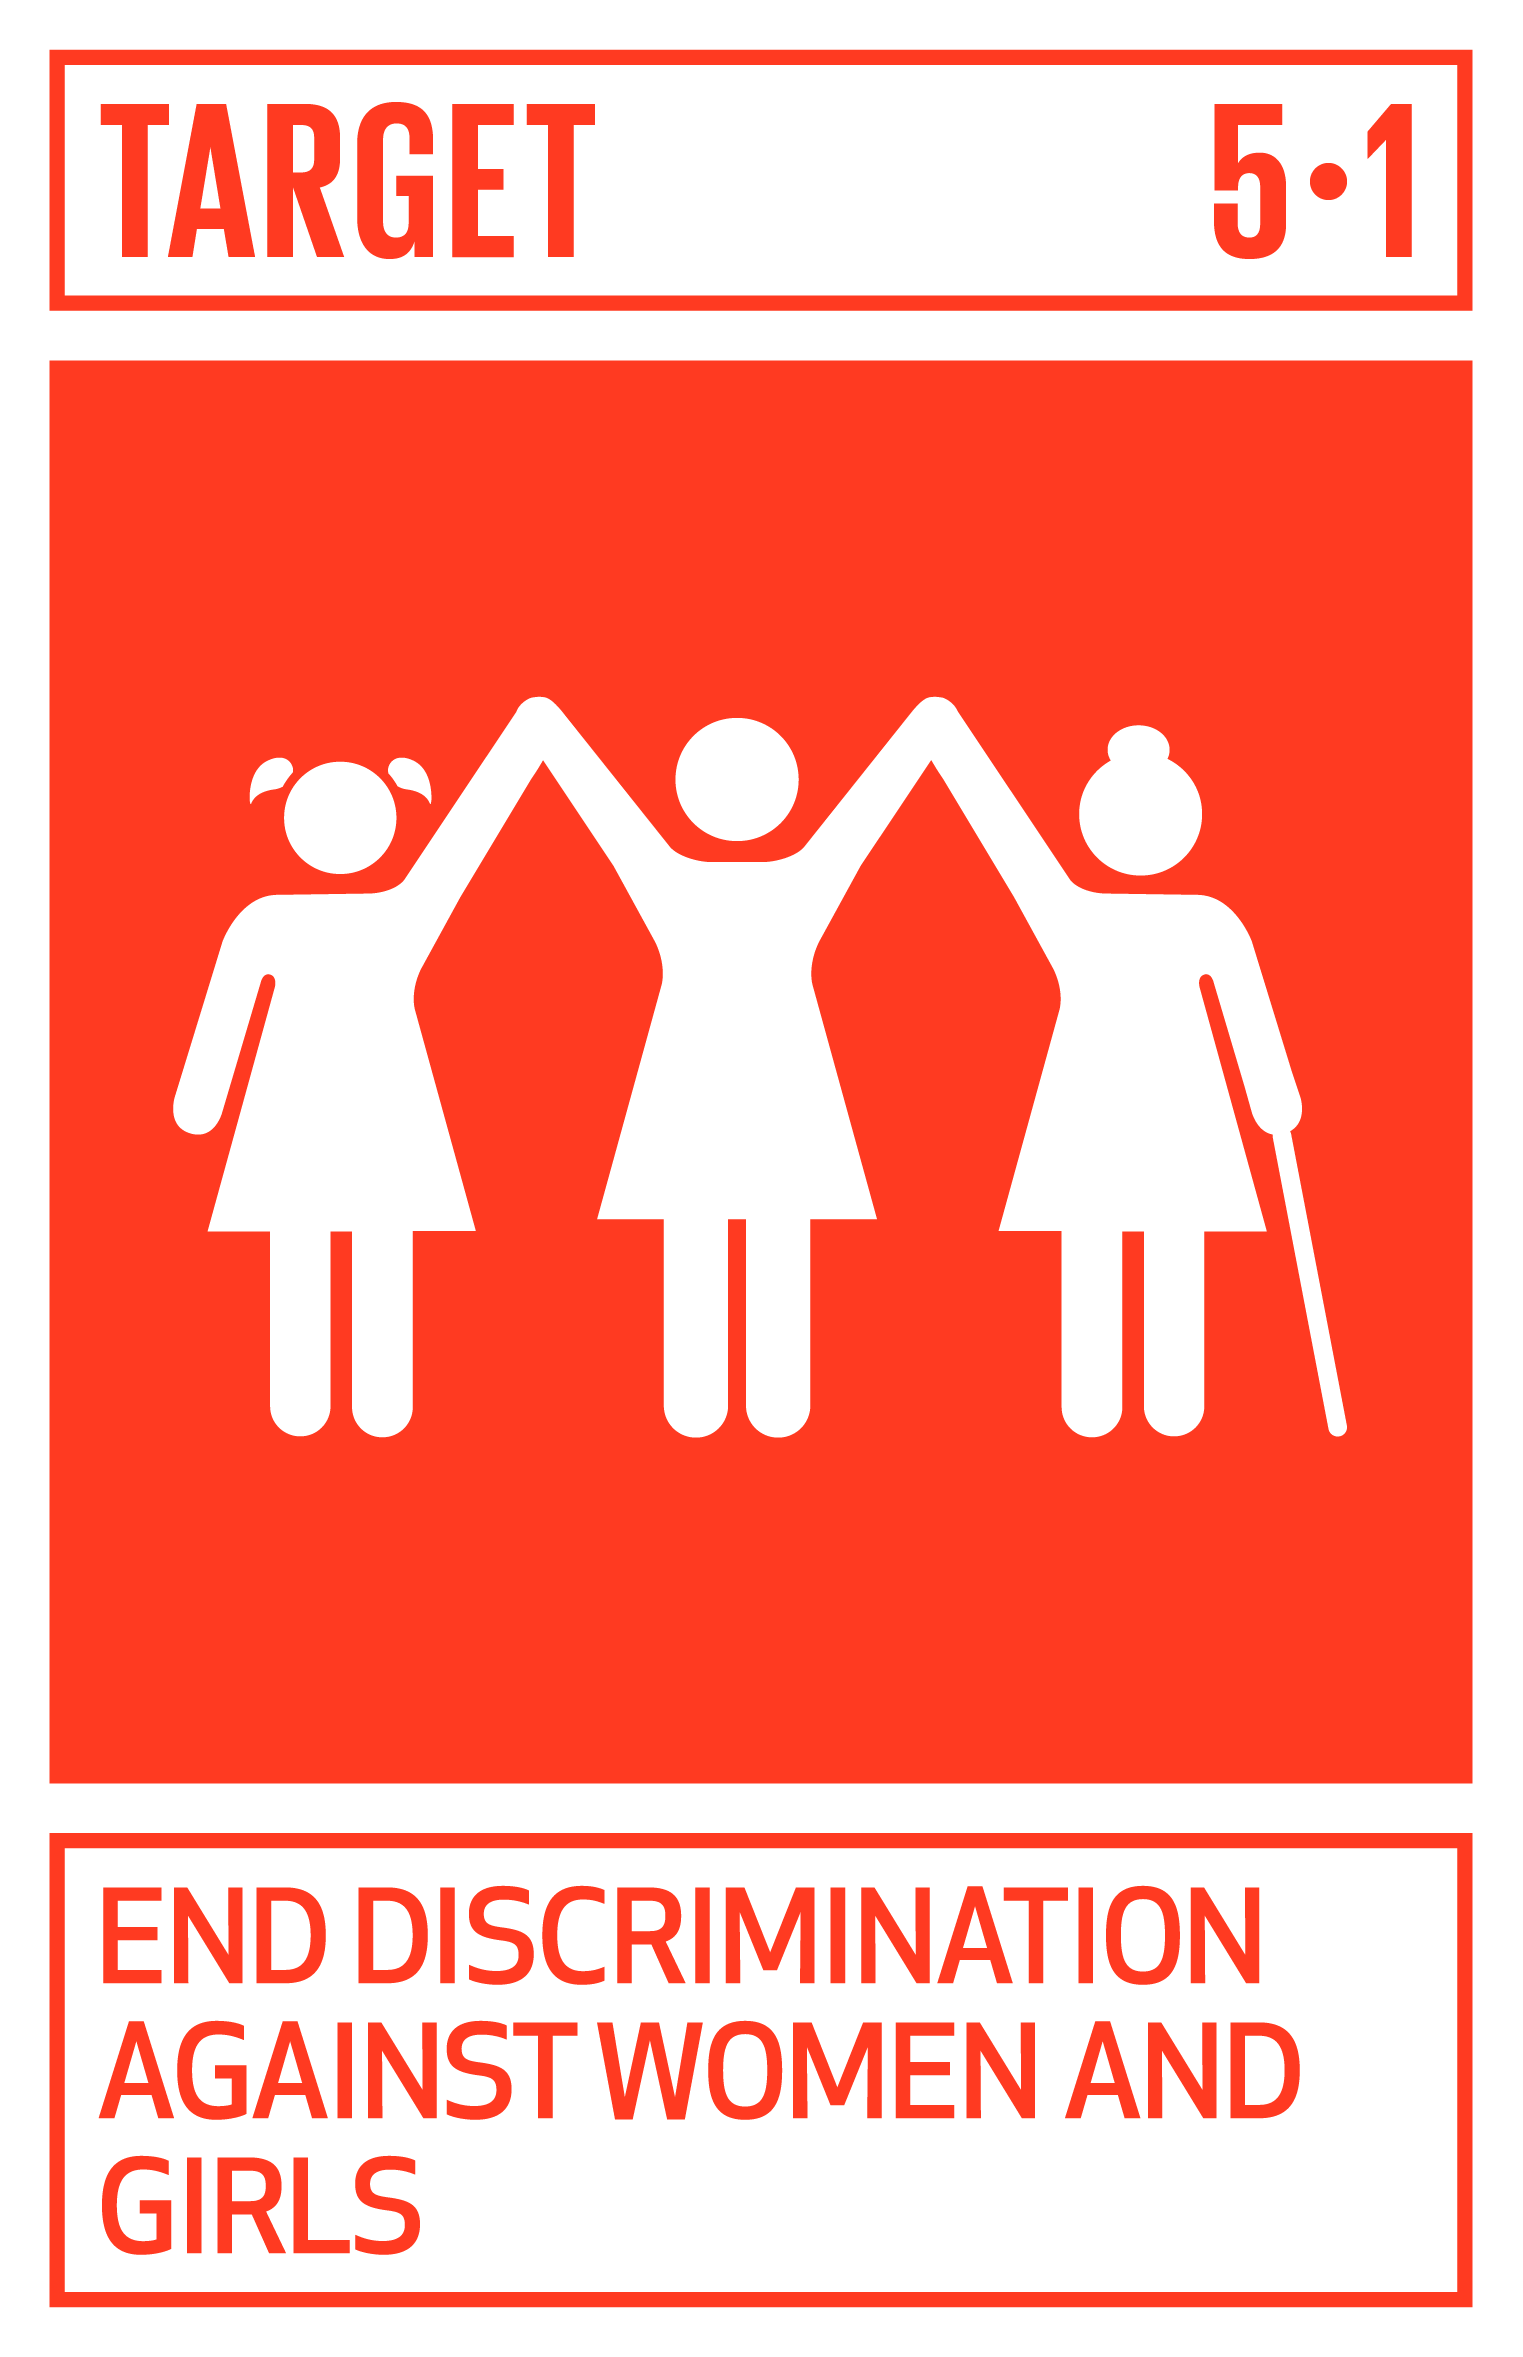 https://ocm.iccrom.org/sdgs/sdg-5-gender-equality/sdg-51-end-discrimination-against-women-and-girls